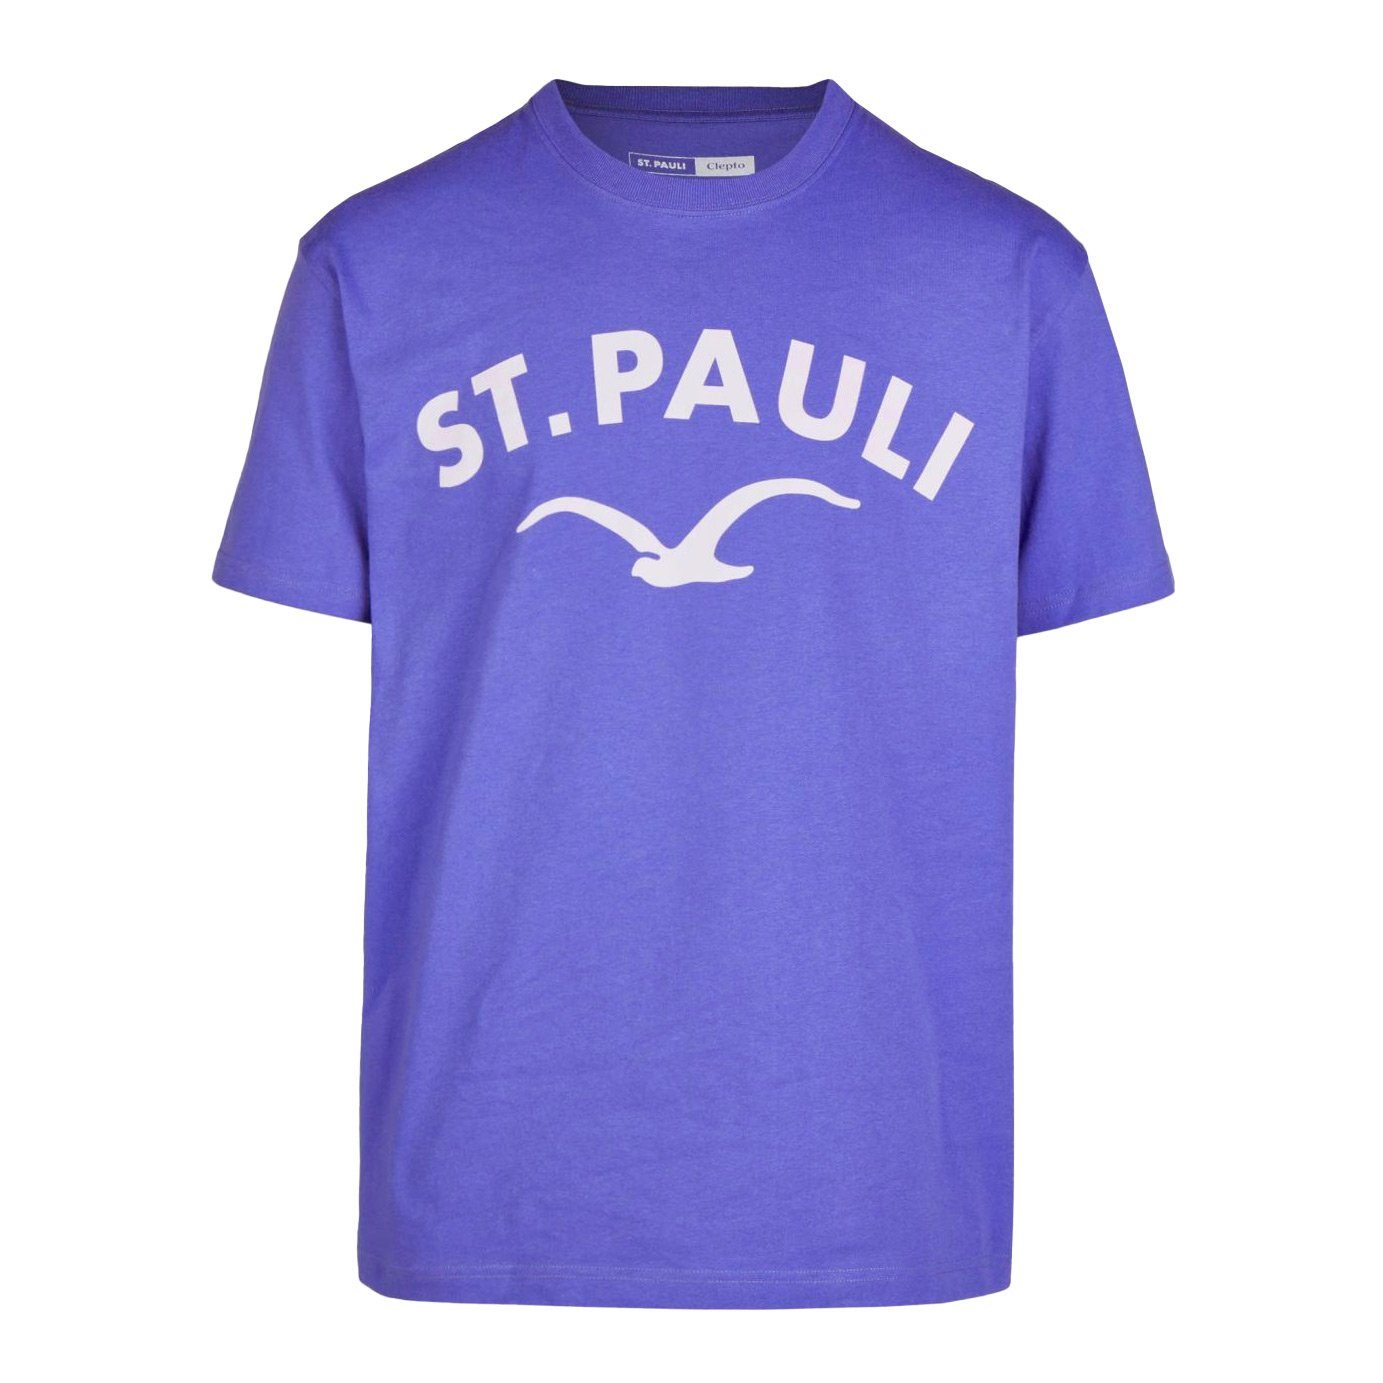 T-Shirt very - Cleptomanicx Pauli peri St